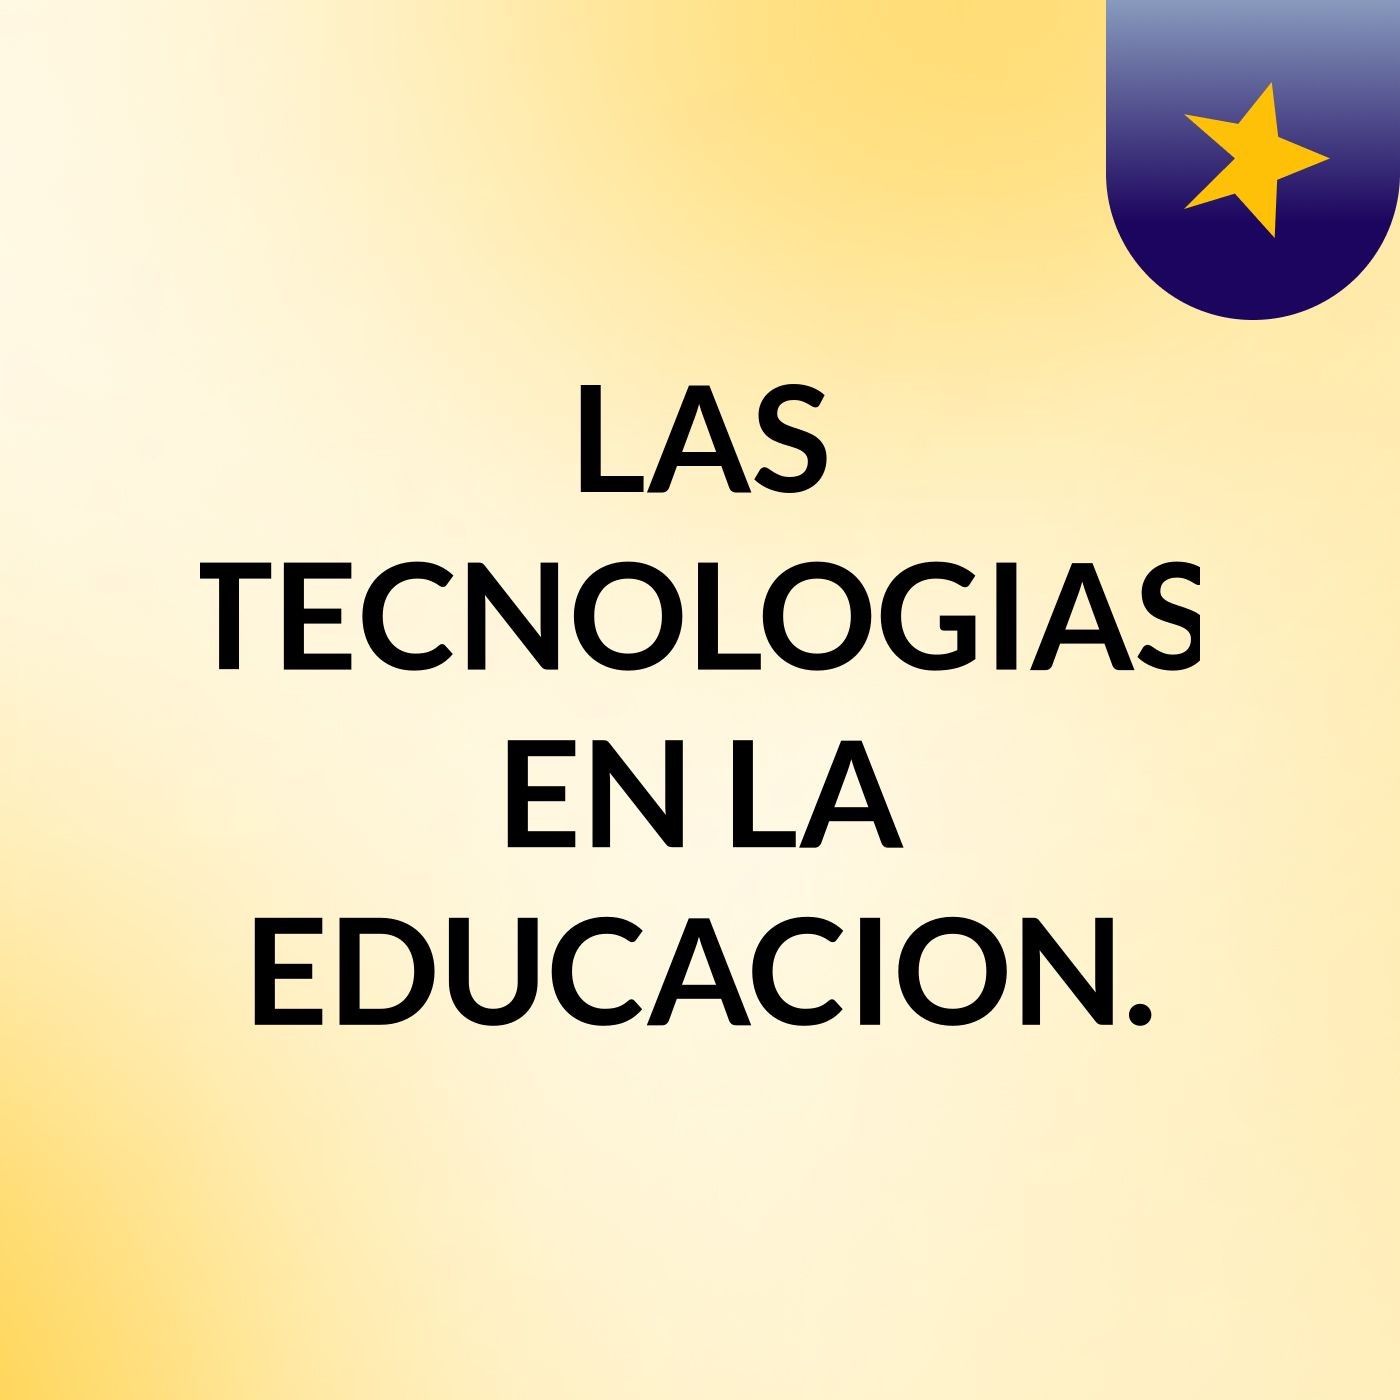 LAS TECNOLOGIAS EN LA EDUCACION.